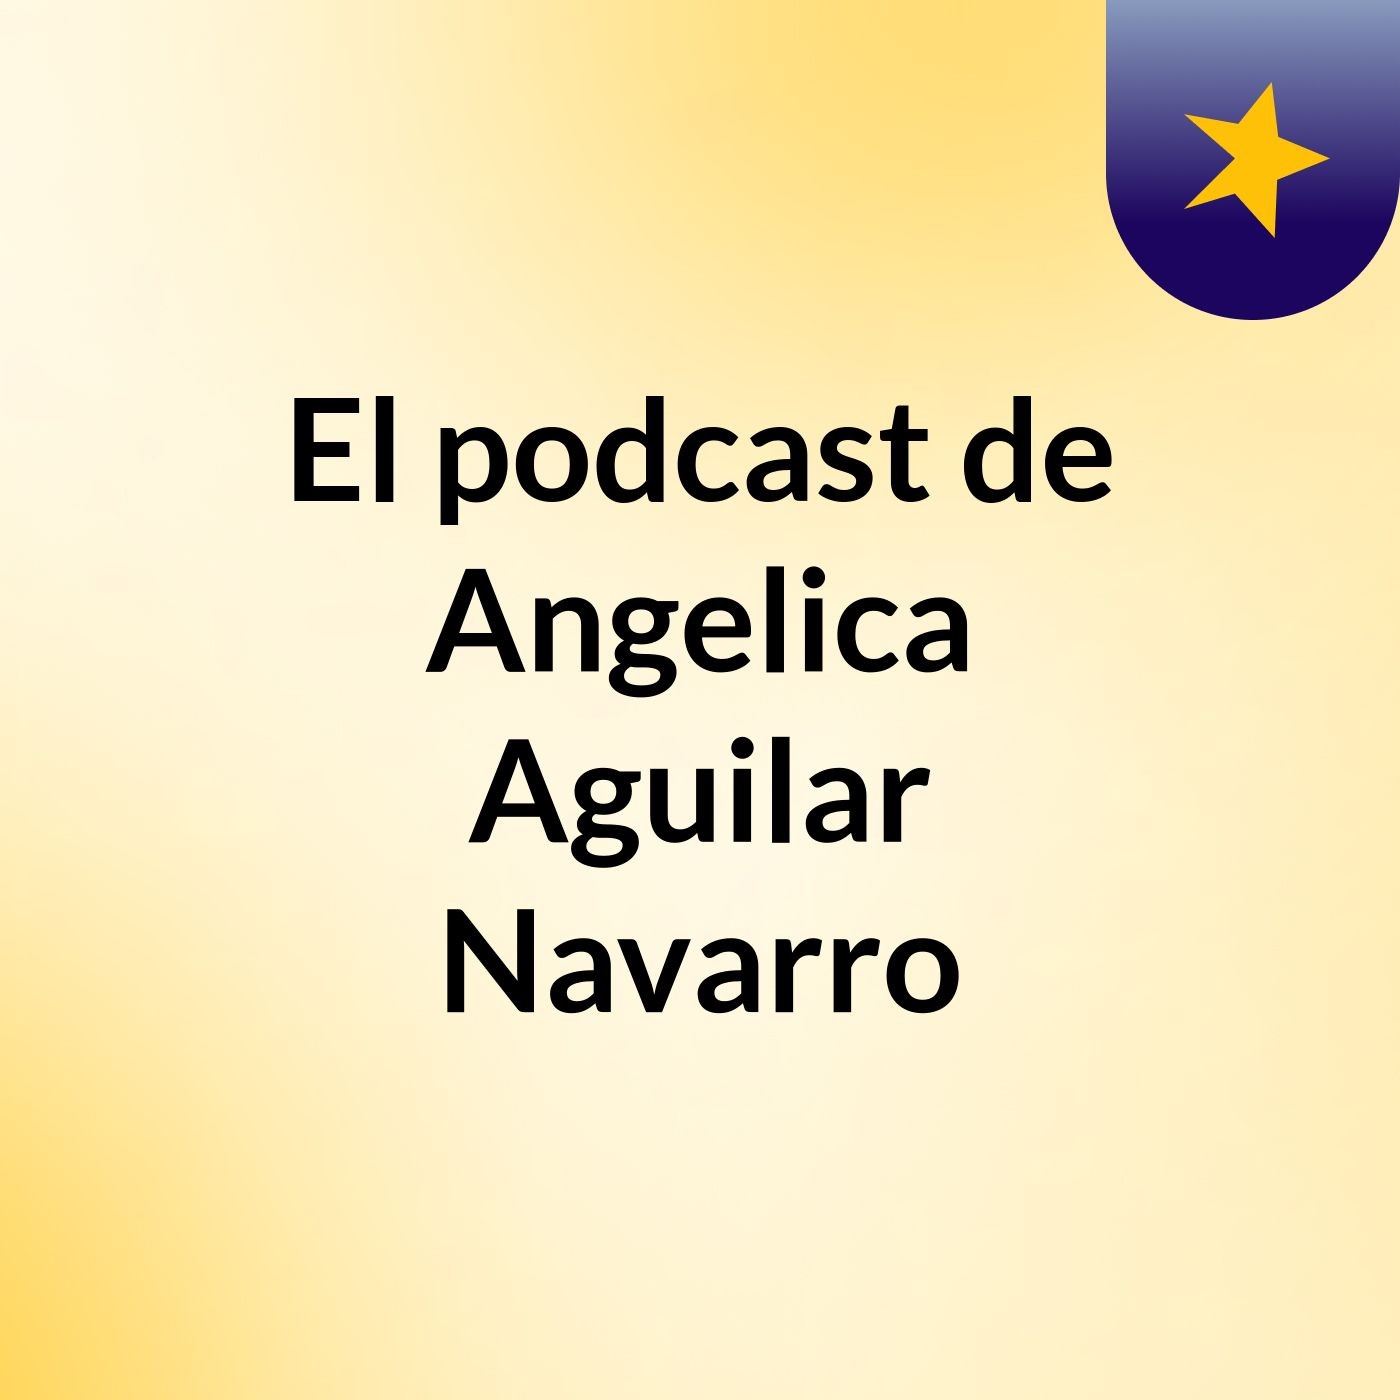 El podcast de Angelica Aguilar Navarro